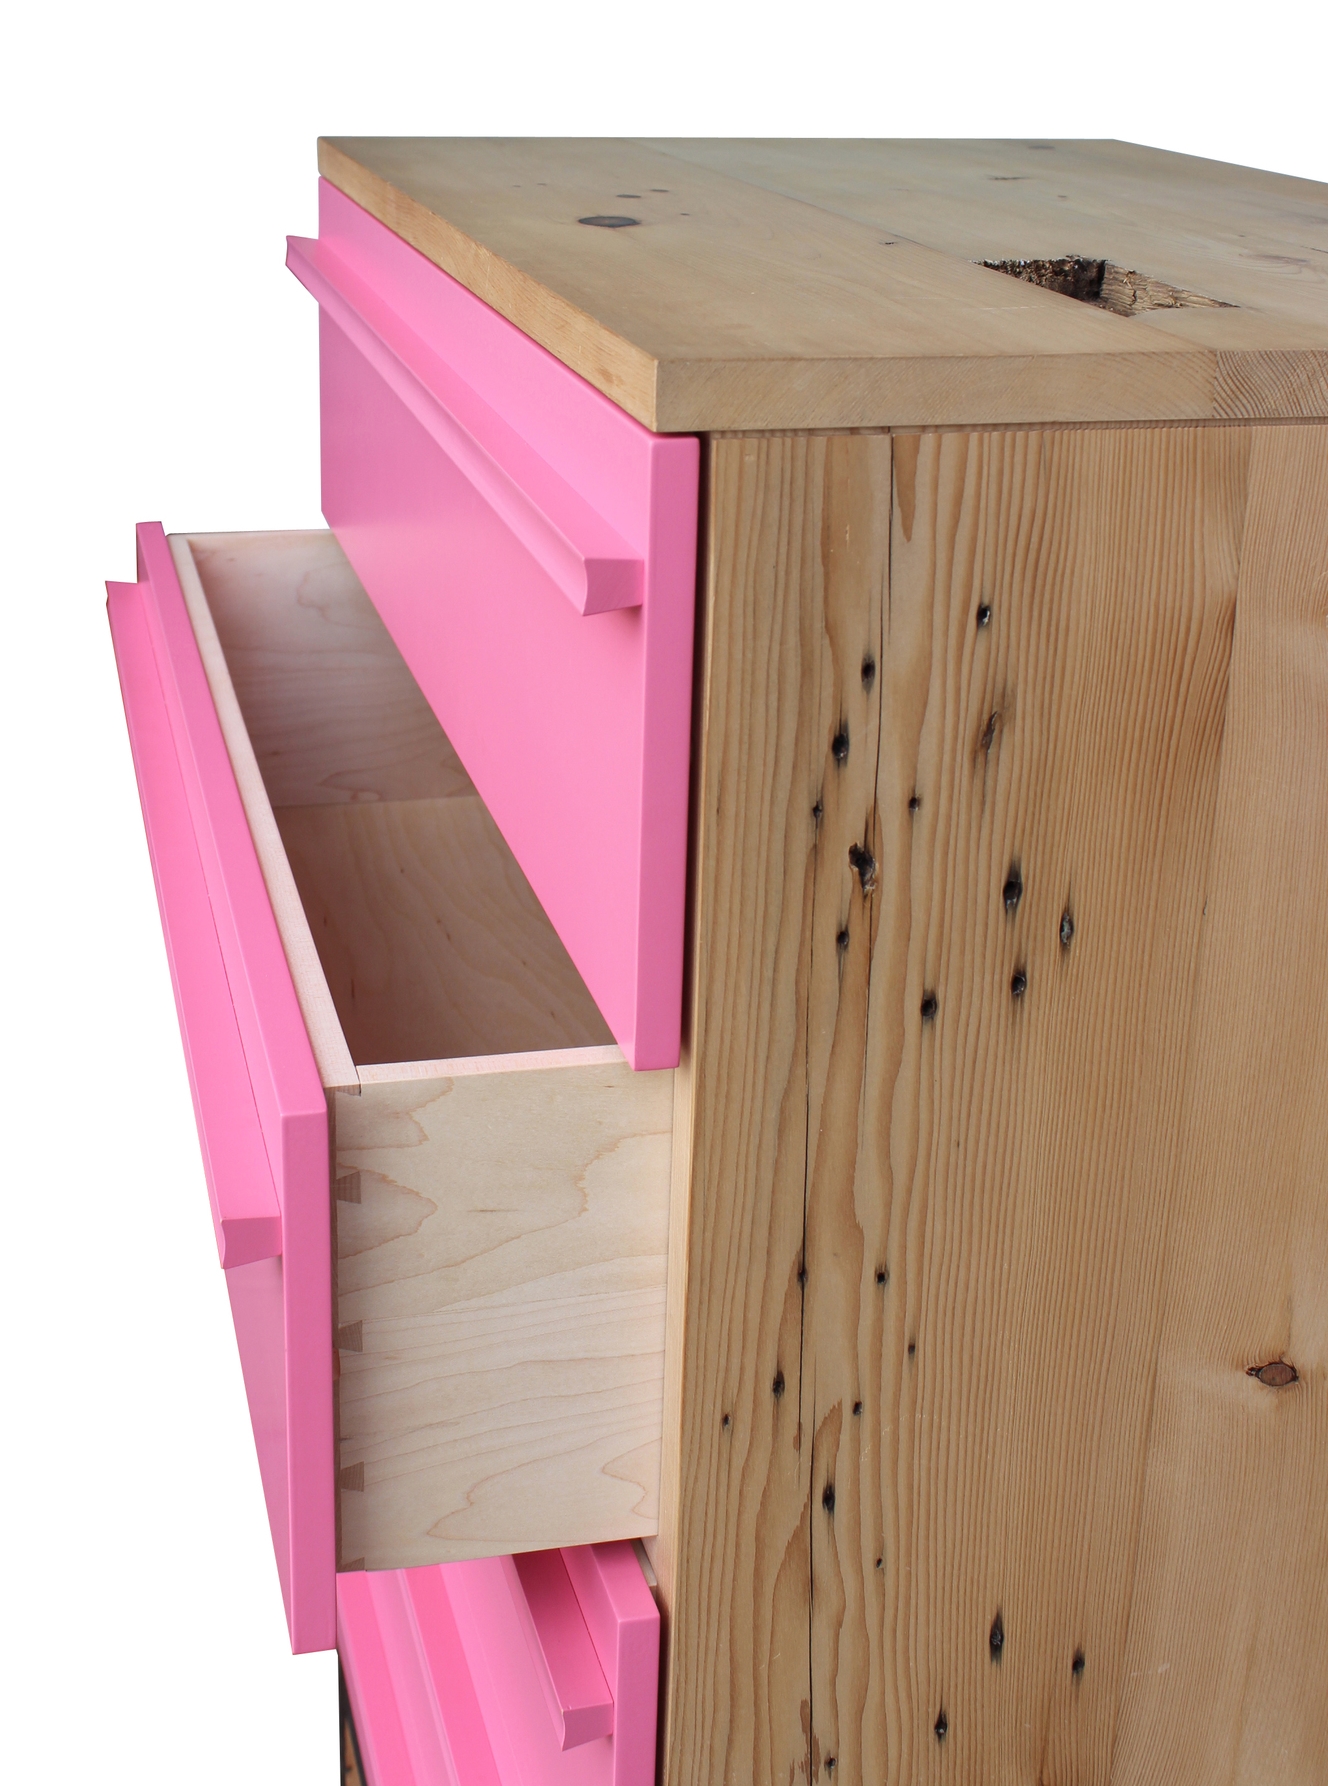 pink dresser, console photos 2014 069.JPG